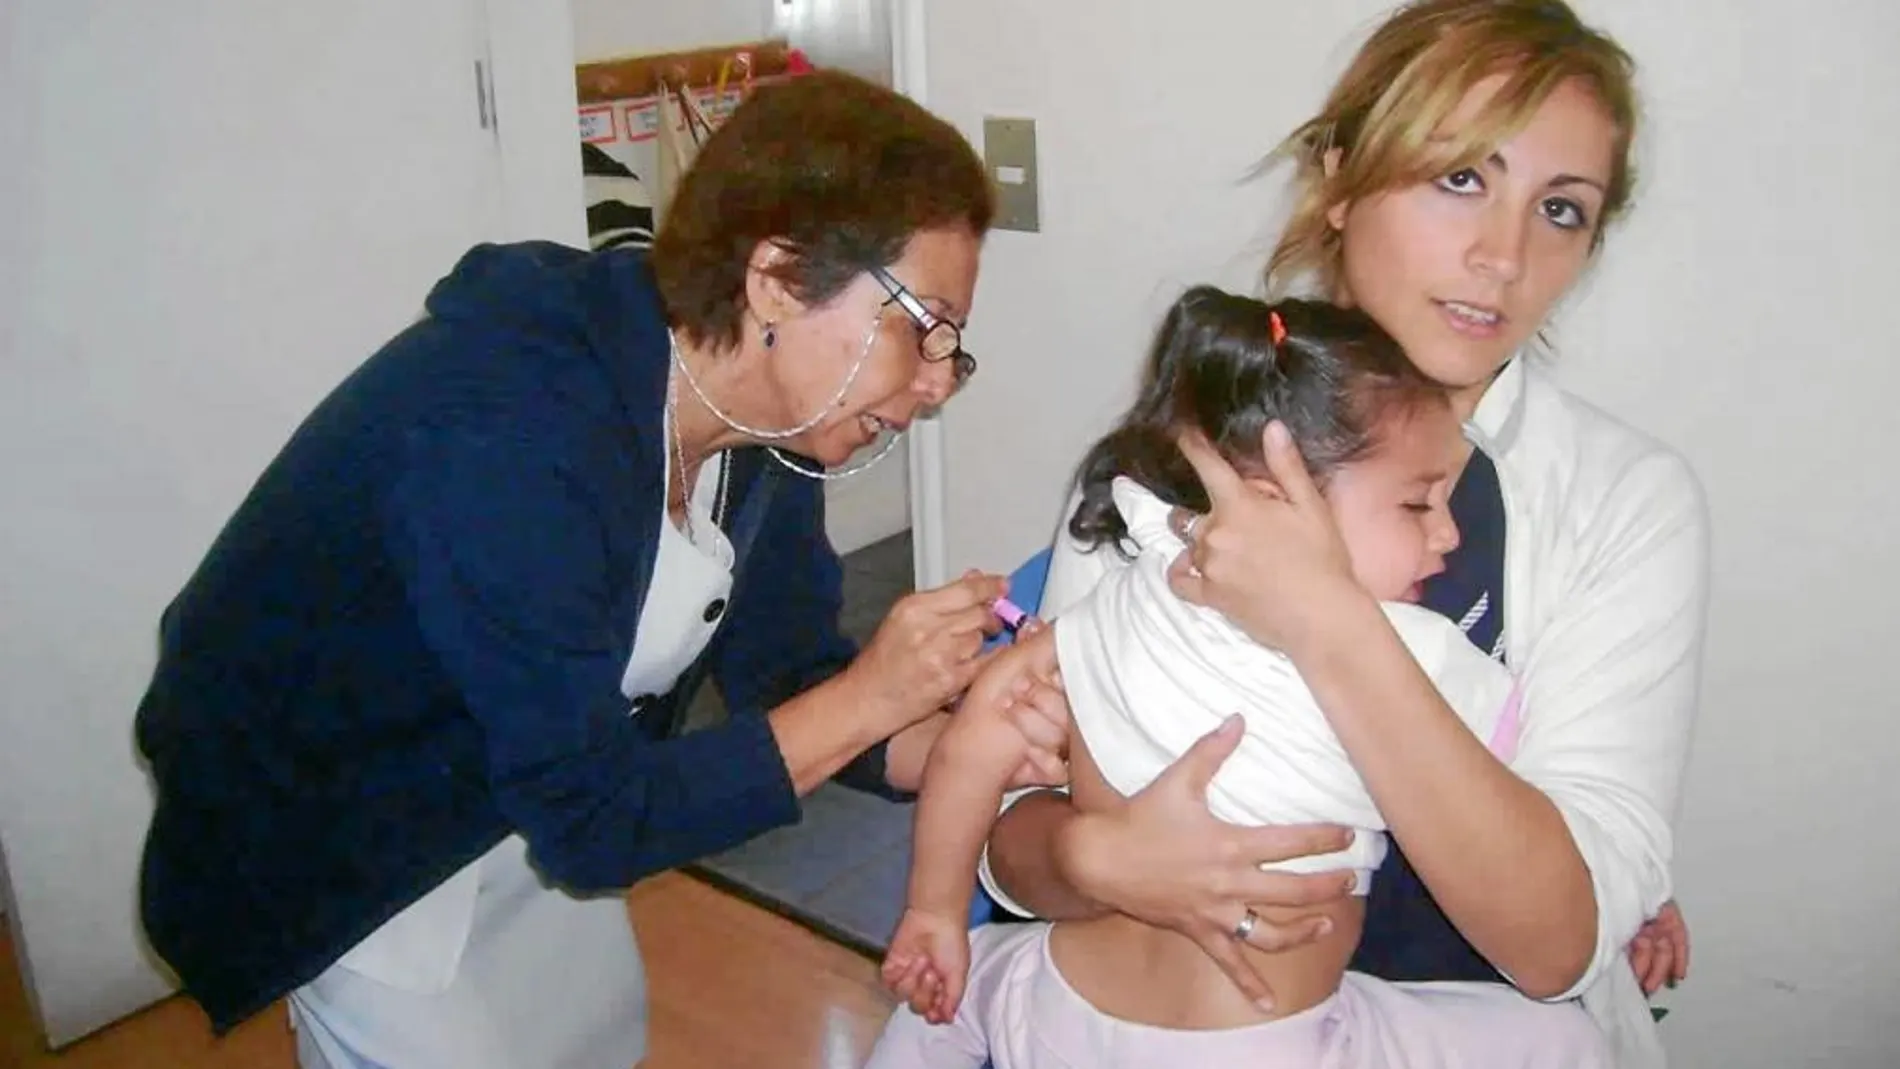 Una niña recibe una vacuna en un centro de salud de la Comunidad. Abajo, el nuevo calendario de vacunas de 2013